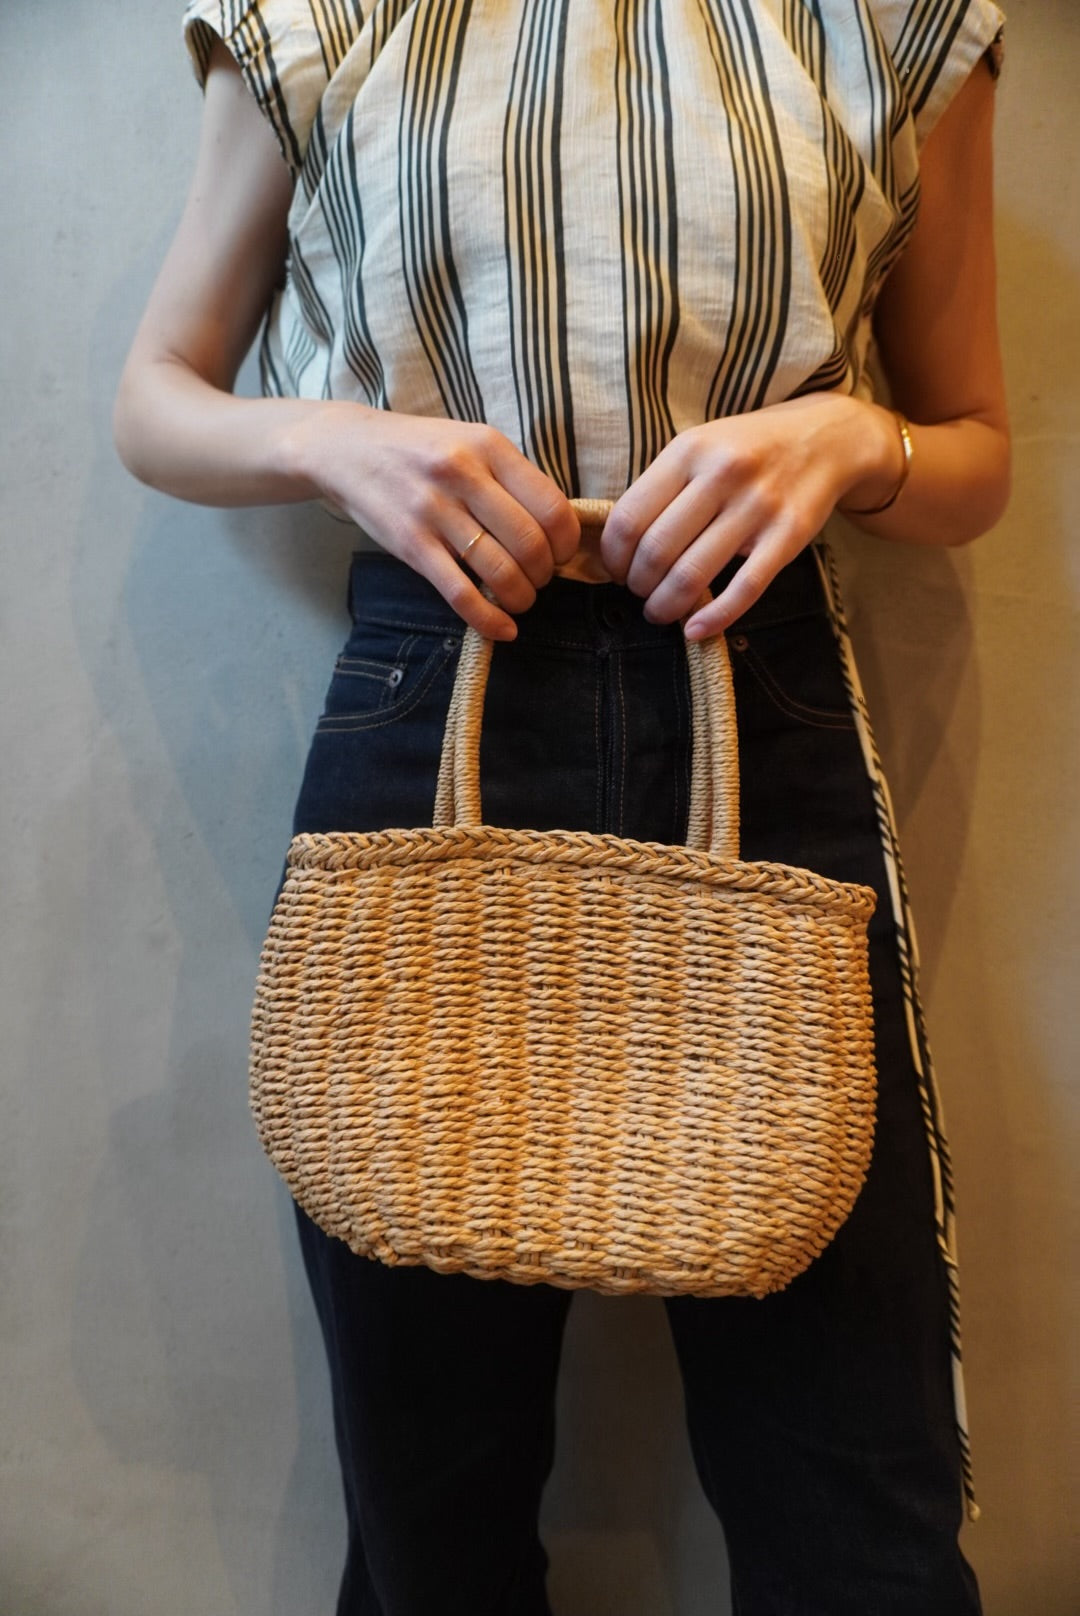 small basket bag